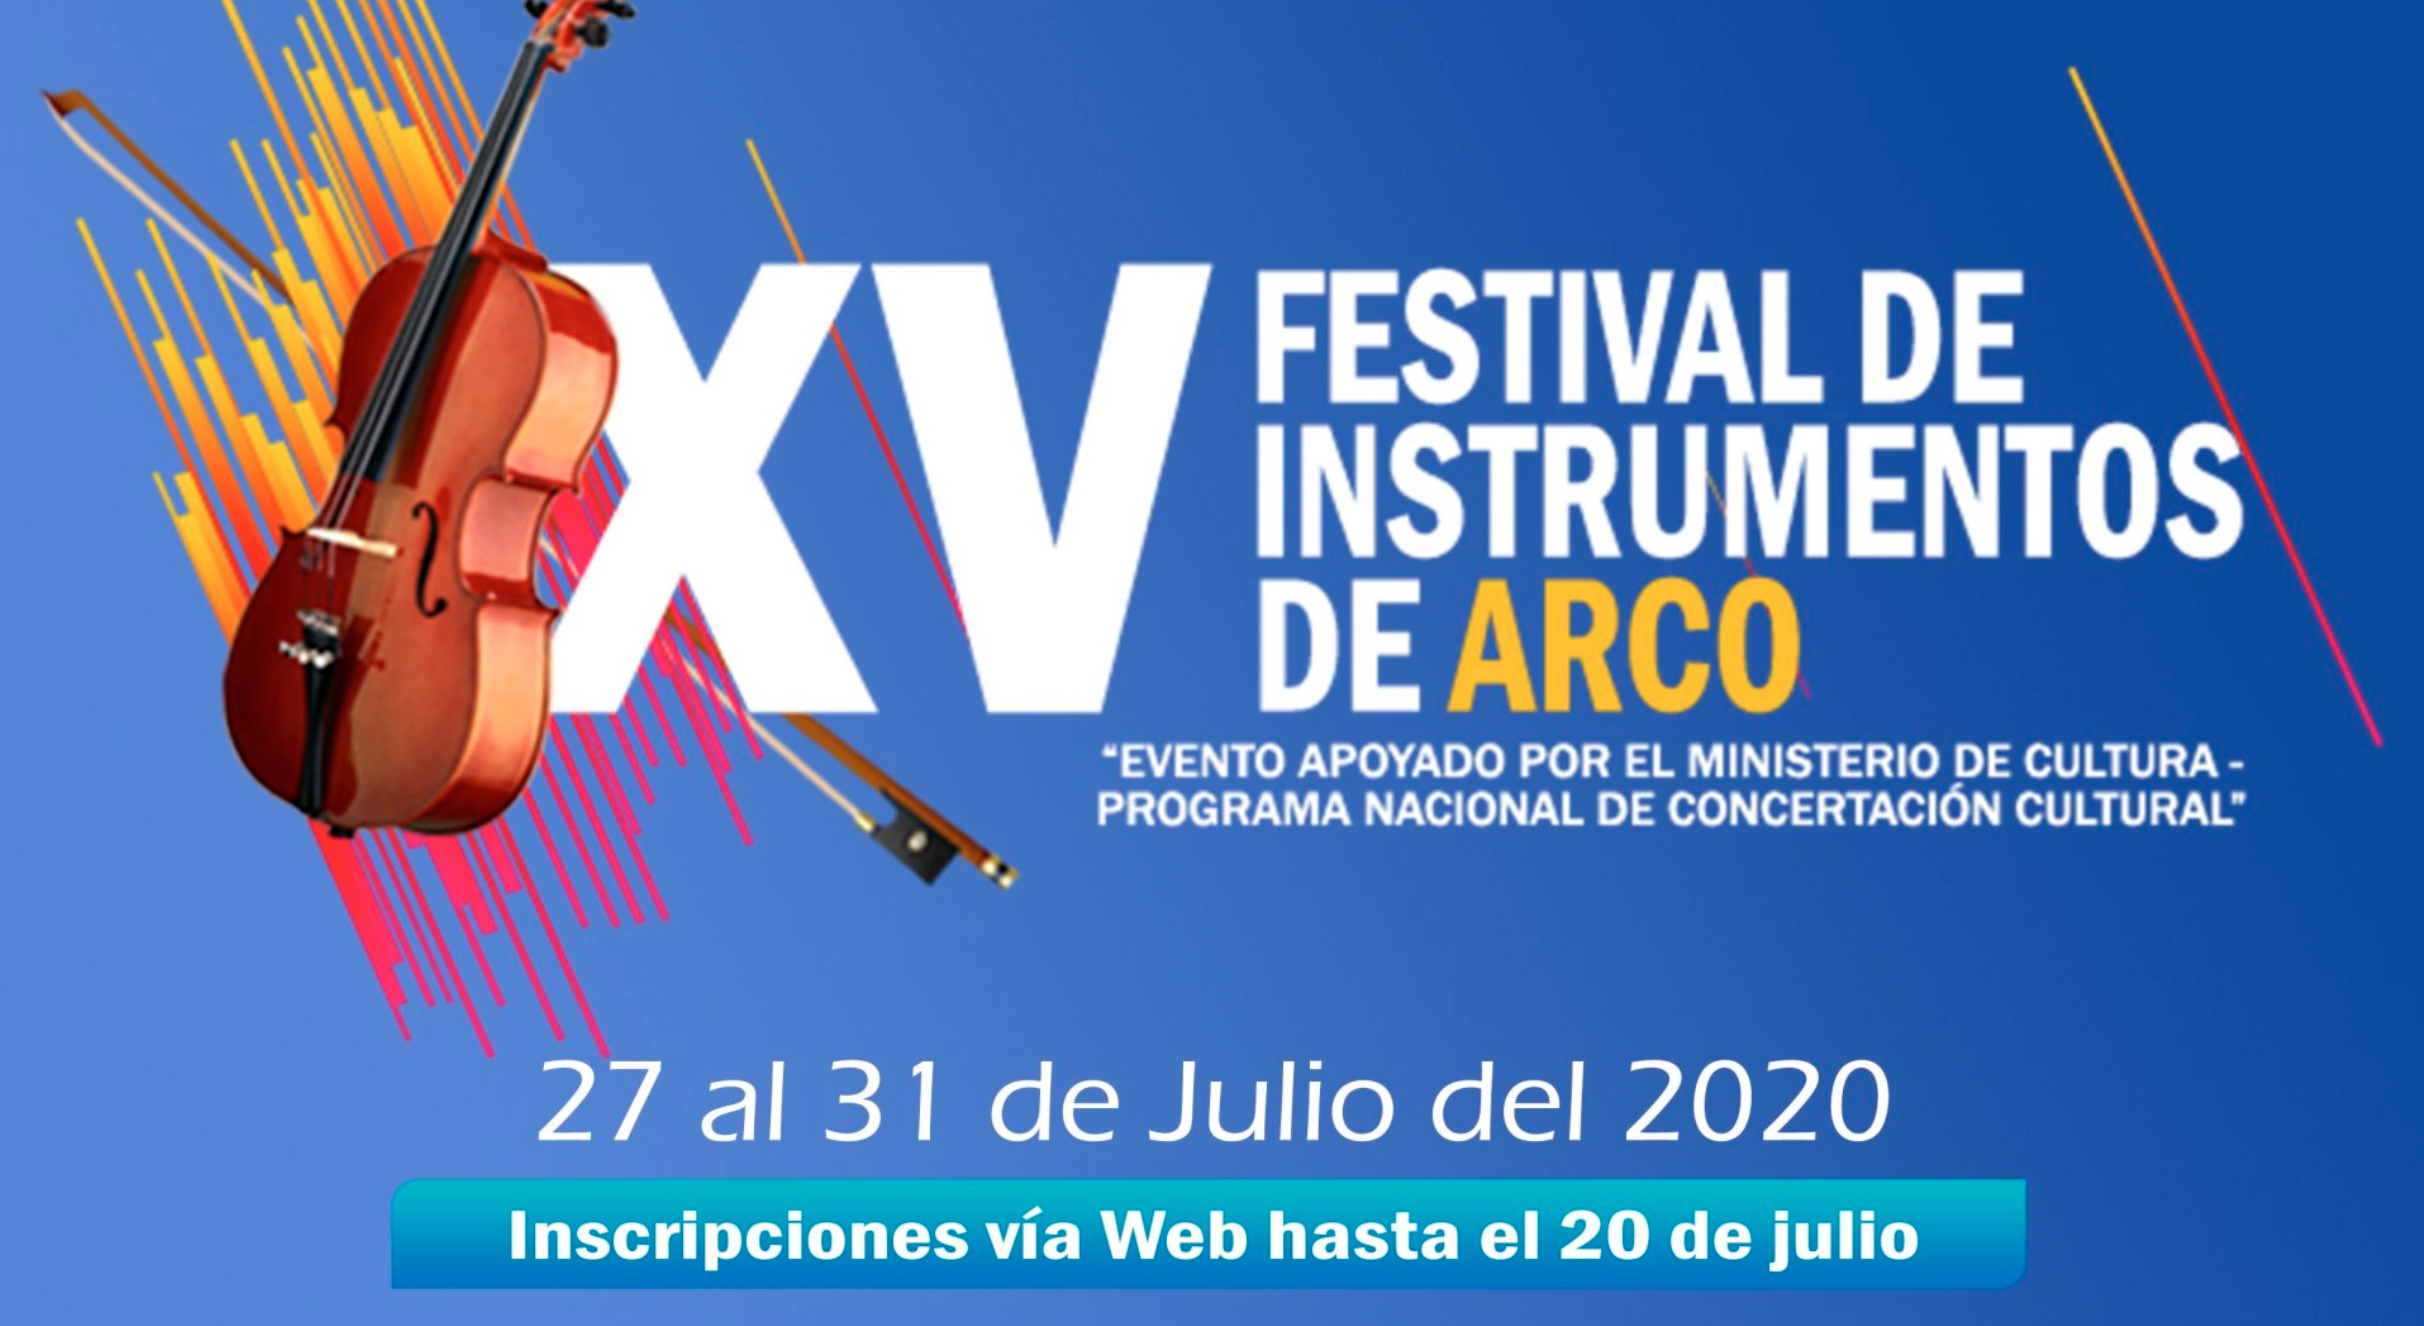 Convocatoria: XV Festival de instrumentos de arco